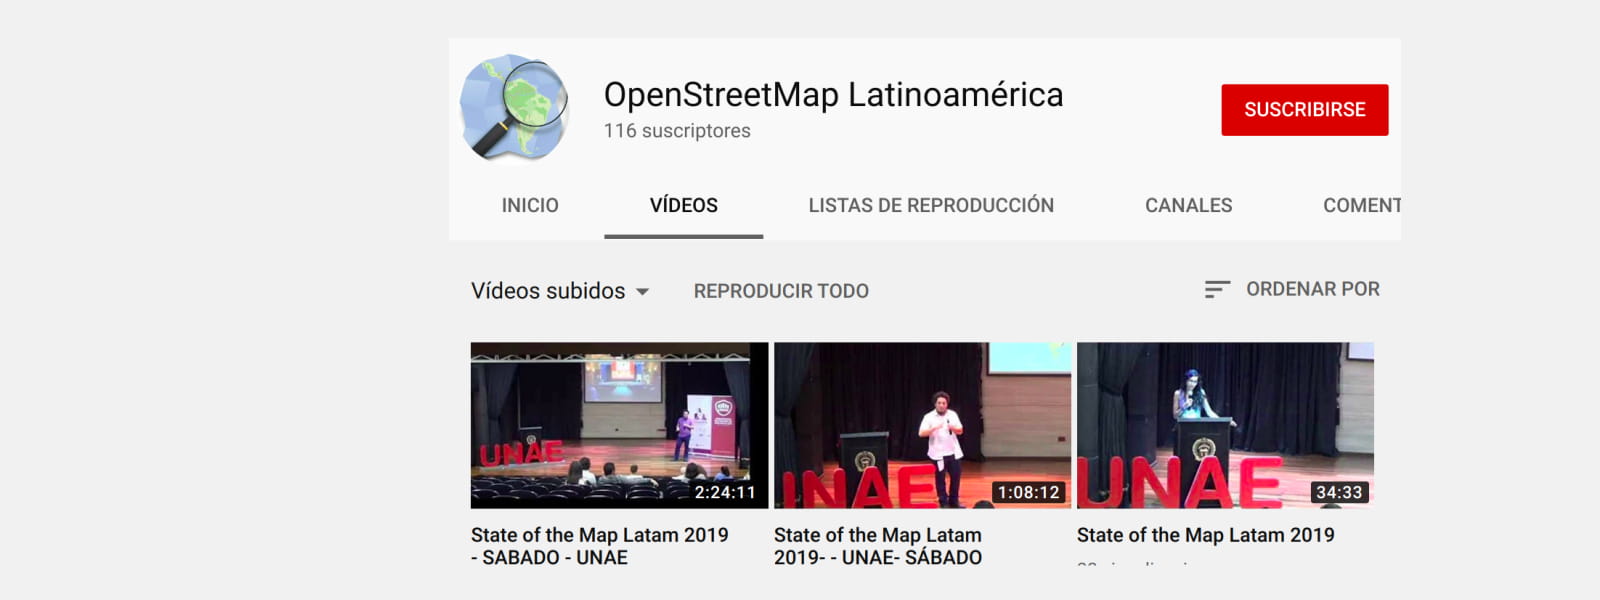 Portada. Canal de Youtube de OpenStreetMap LatinoAmérica